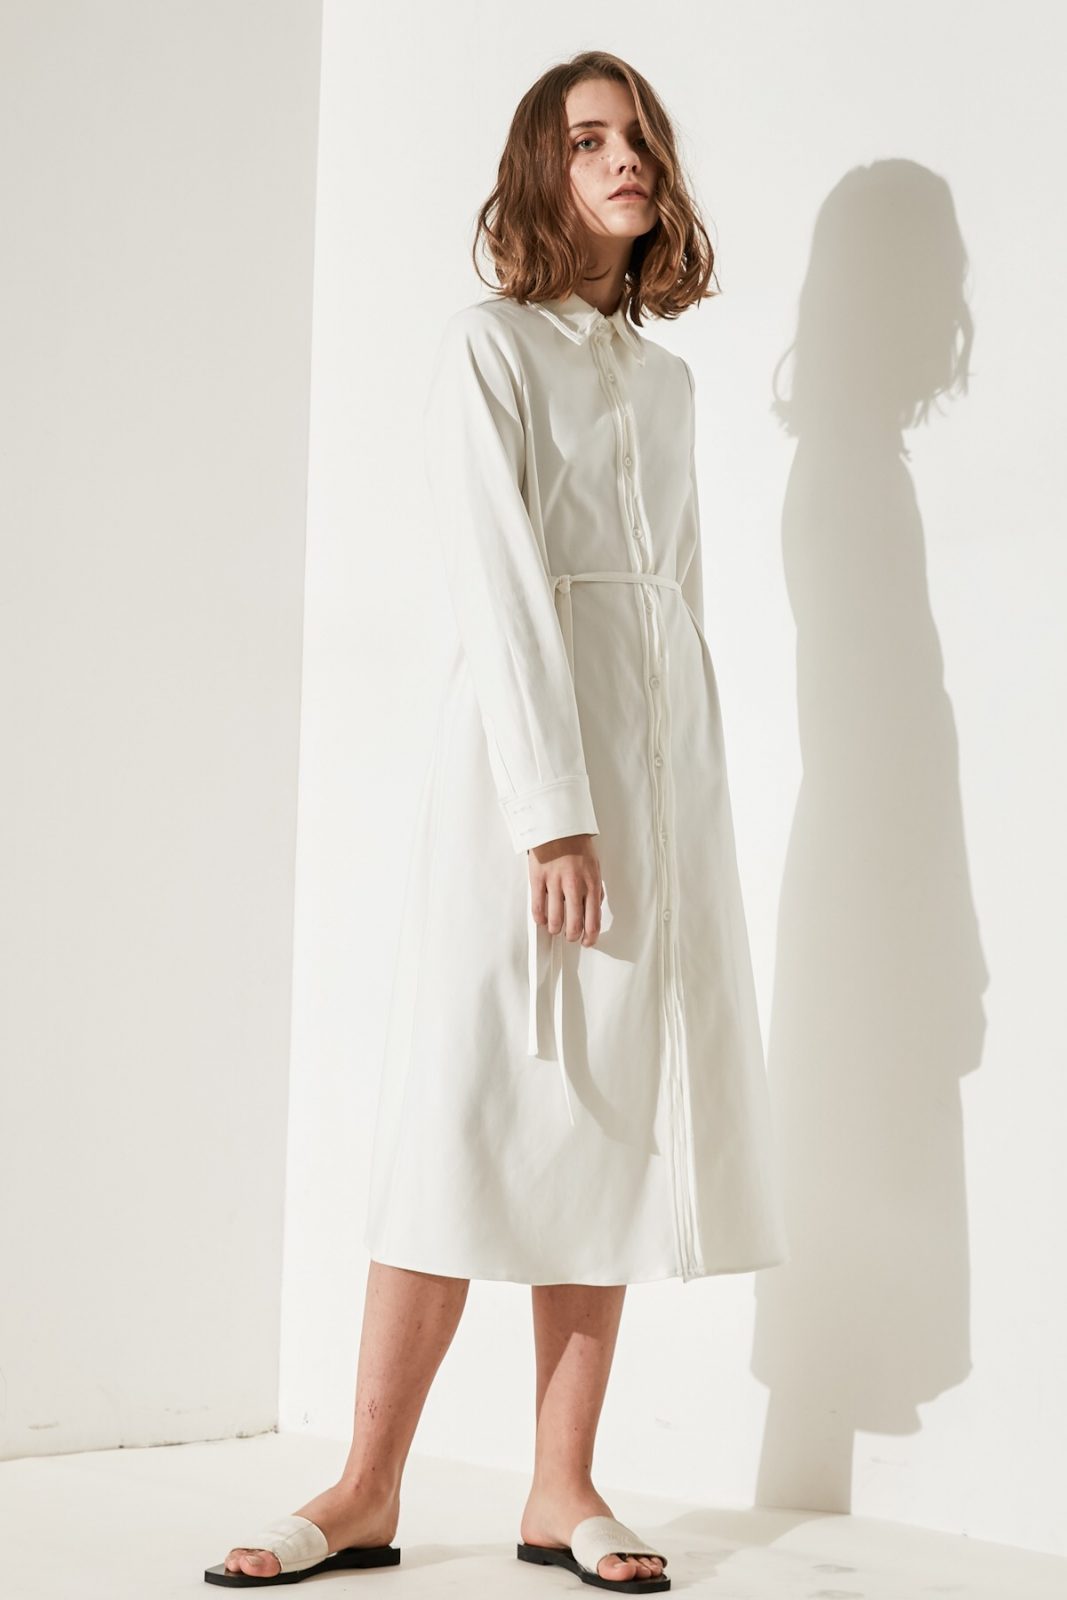 SKYE minimalist women clothing fashion Katie Chiffon Dress white 6